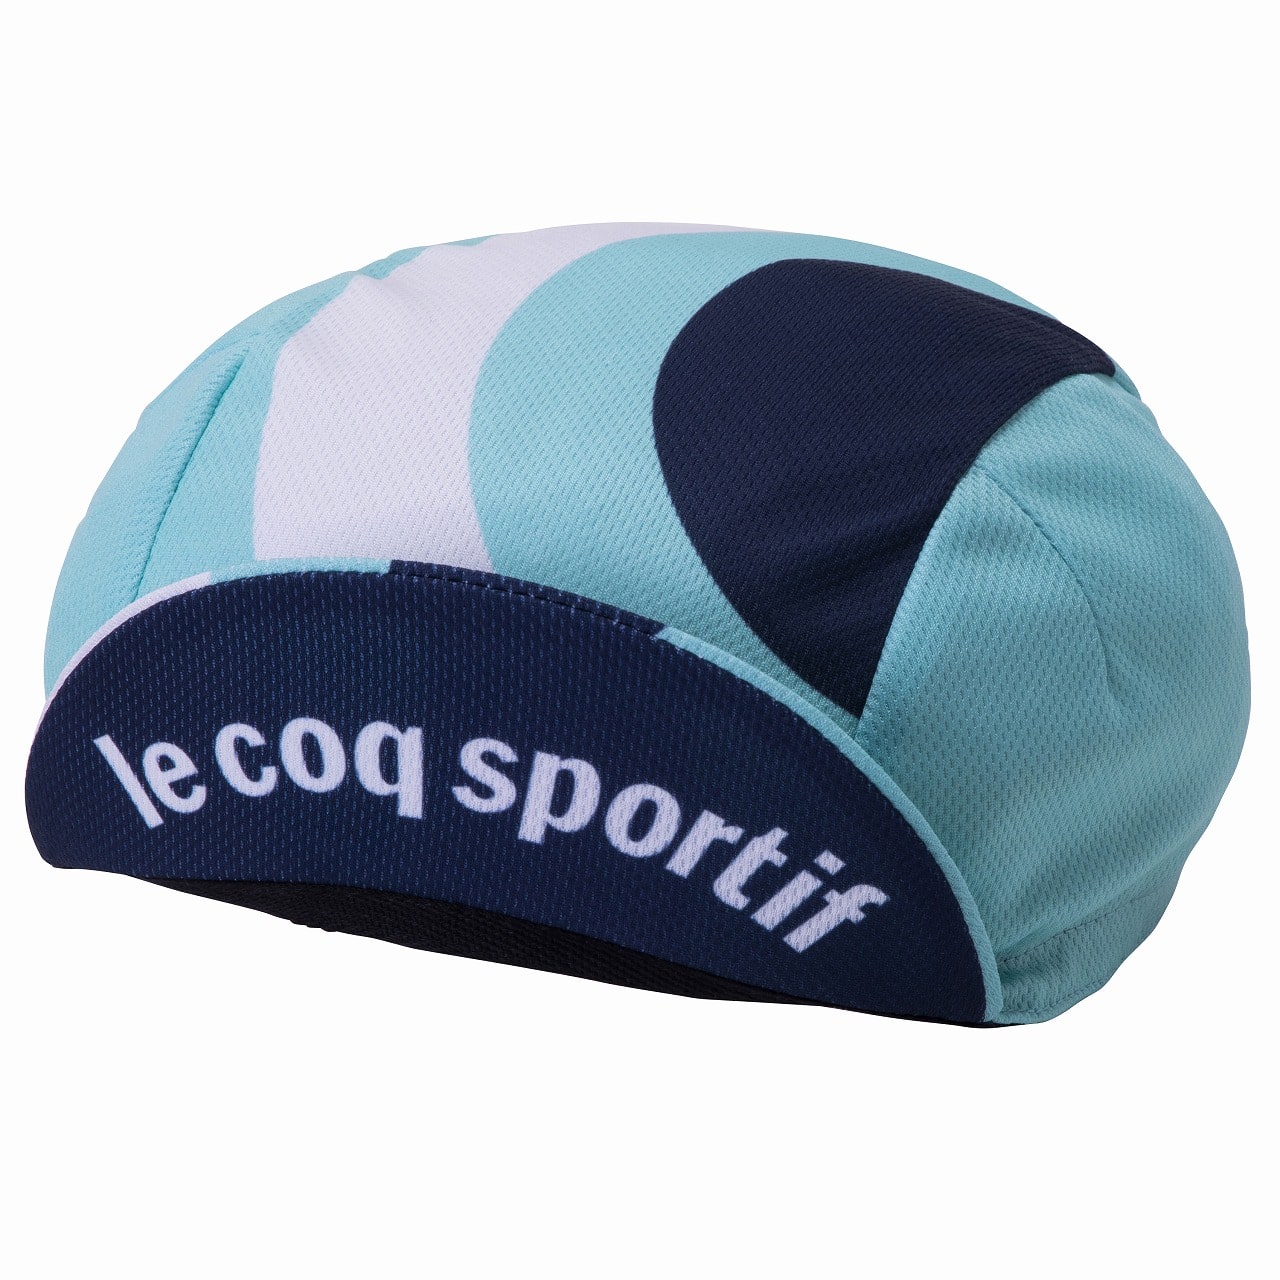 Le coq sportif ( RbNX|eBt ) 20SS QCCPGC00 PRINT CAP Lbv IGN M-L